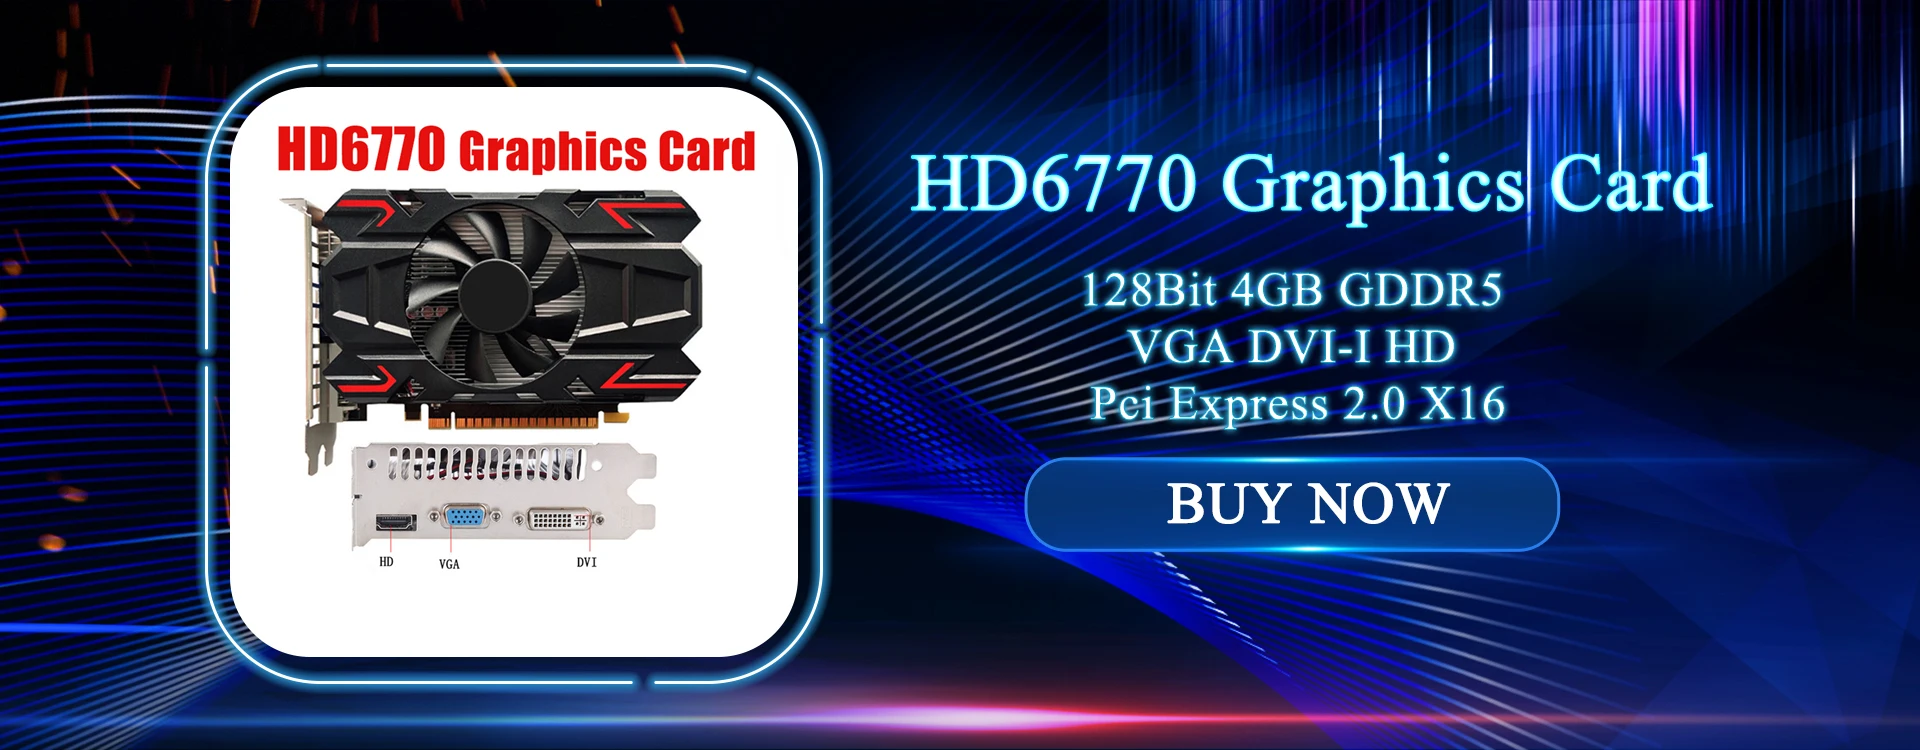 HD7670 Graphics Card 128Bit 4GB GDDR5 VGA DVI-I PCI-E PCIE Pci Express 2.0 X16 Video Card For AMD Radeon HD 7670 128 Bit GPU